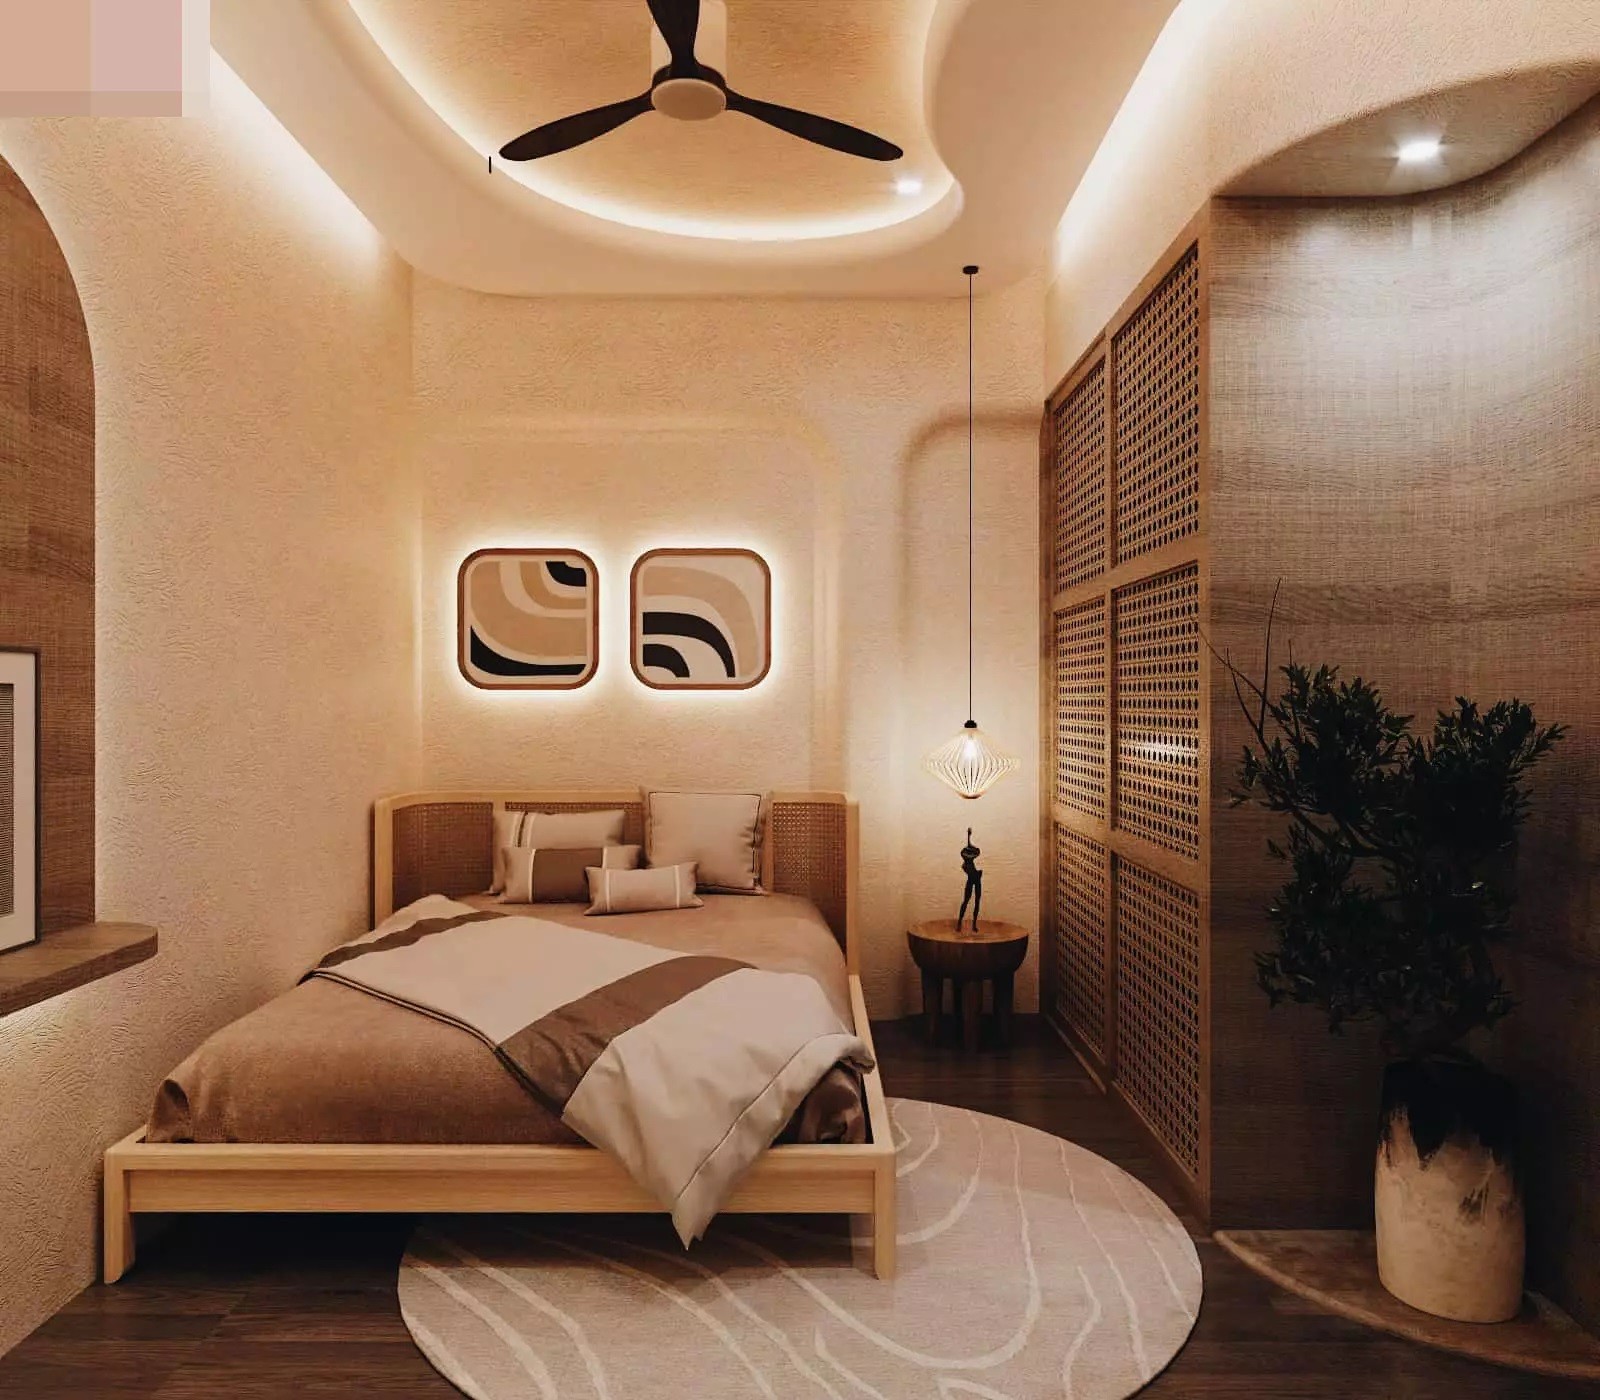 
Phòng ngủ cho khách sang trọng, mang phong cách hiện đại
